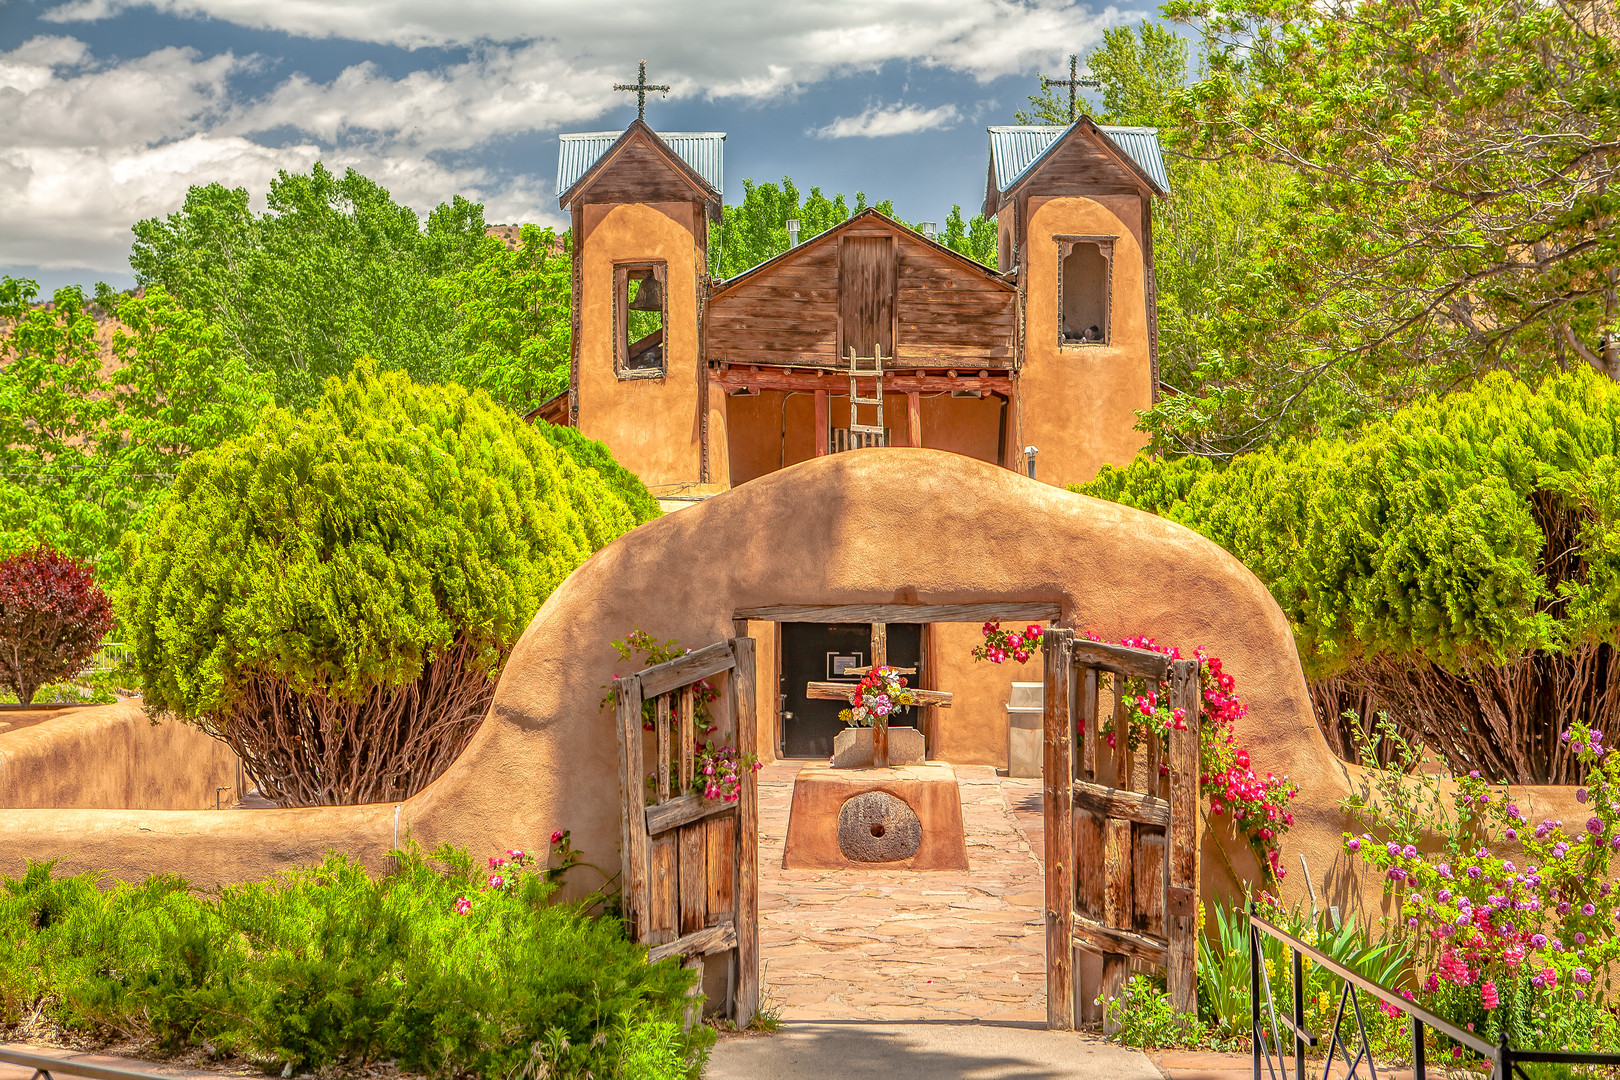 El Santuario de Chimayo, New Mexico USA